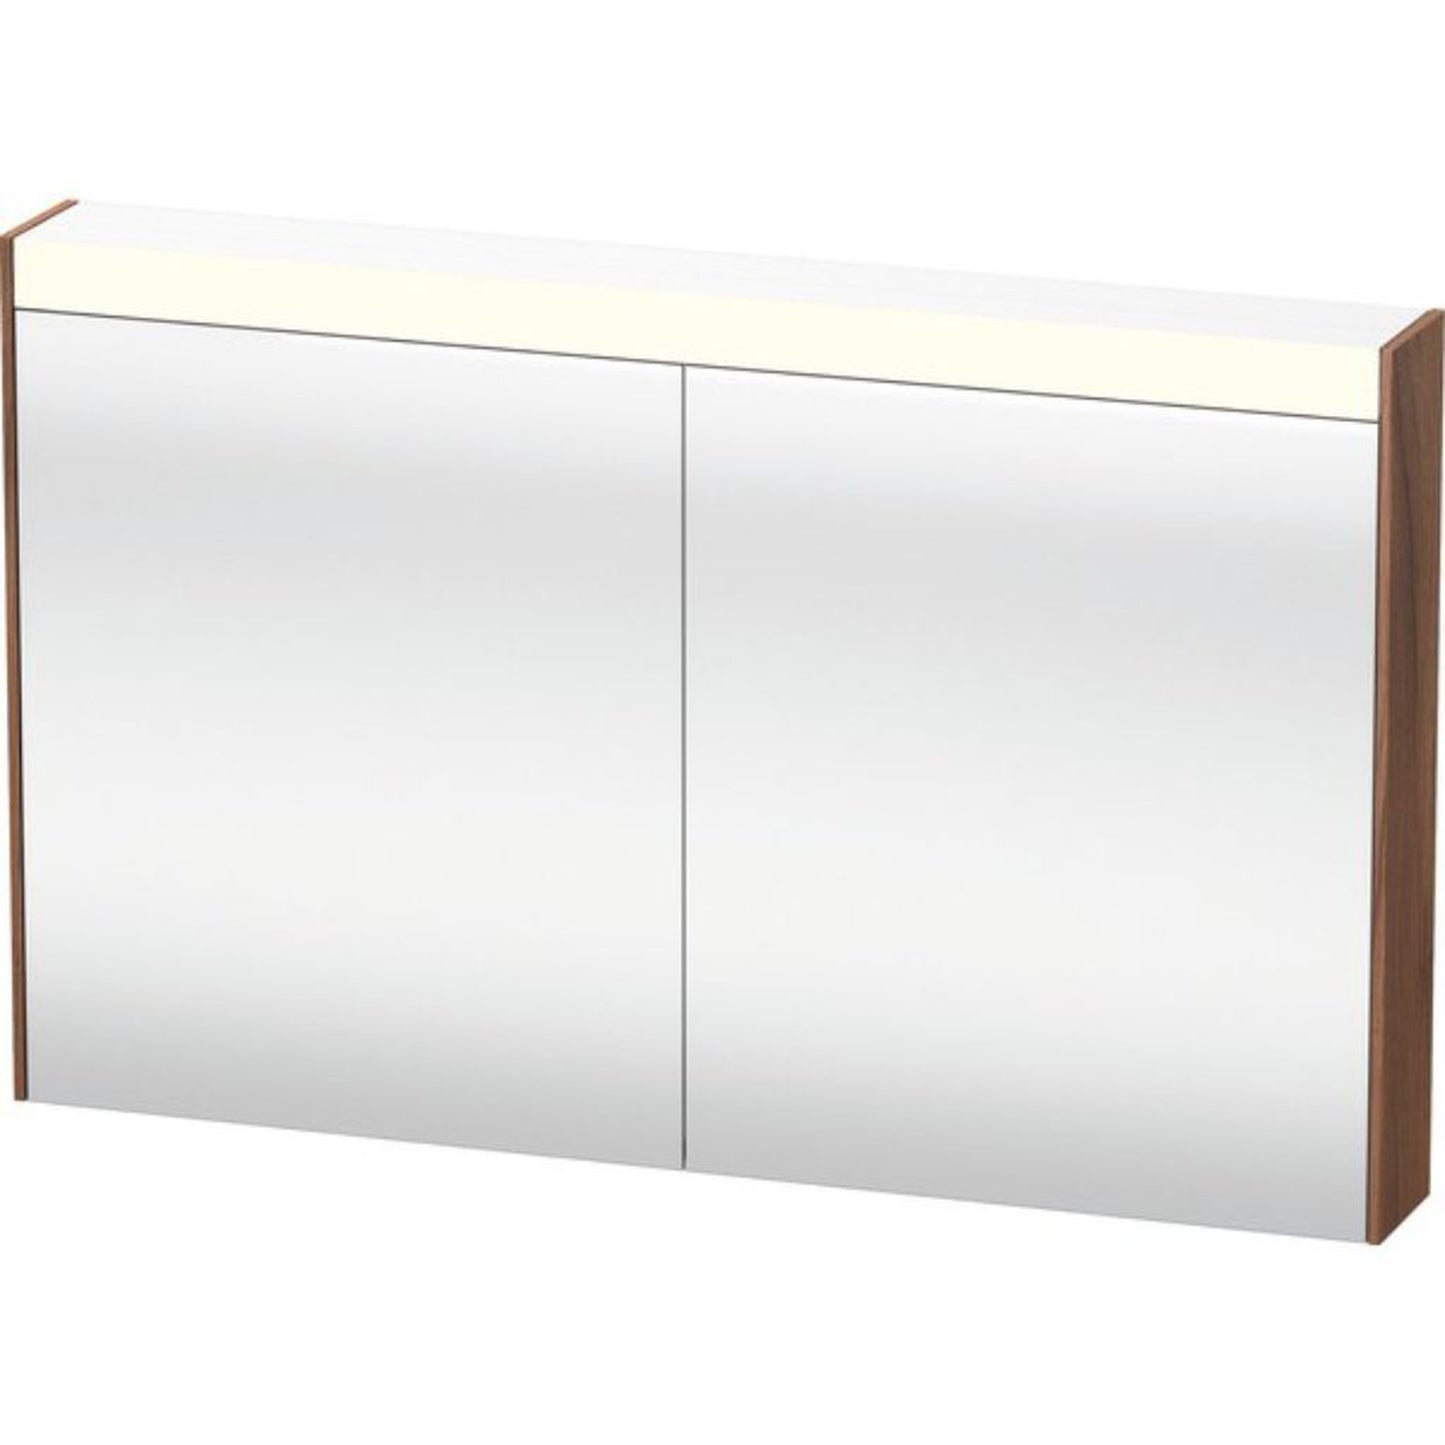 Duravit Brioso 48" x 30" x 6" Mirror Cabinet With Lighting Natural Walnut